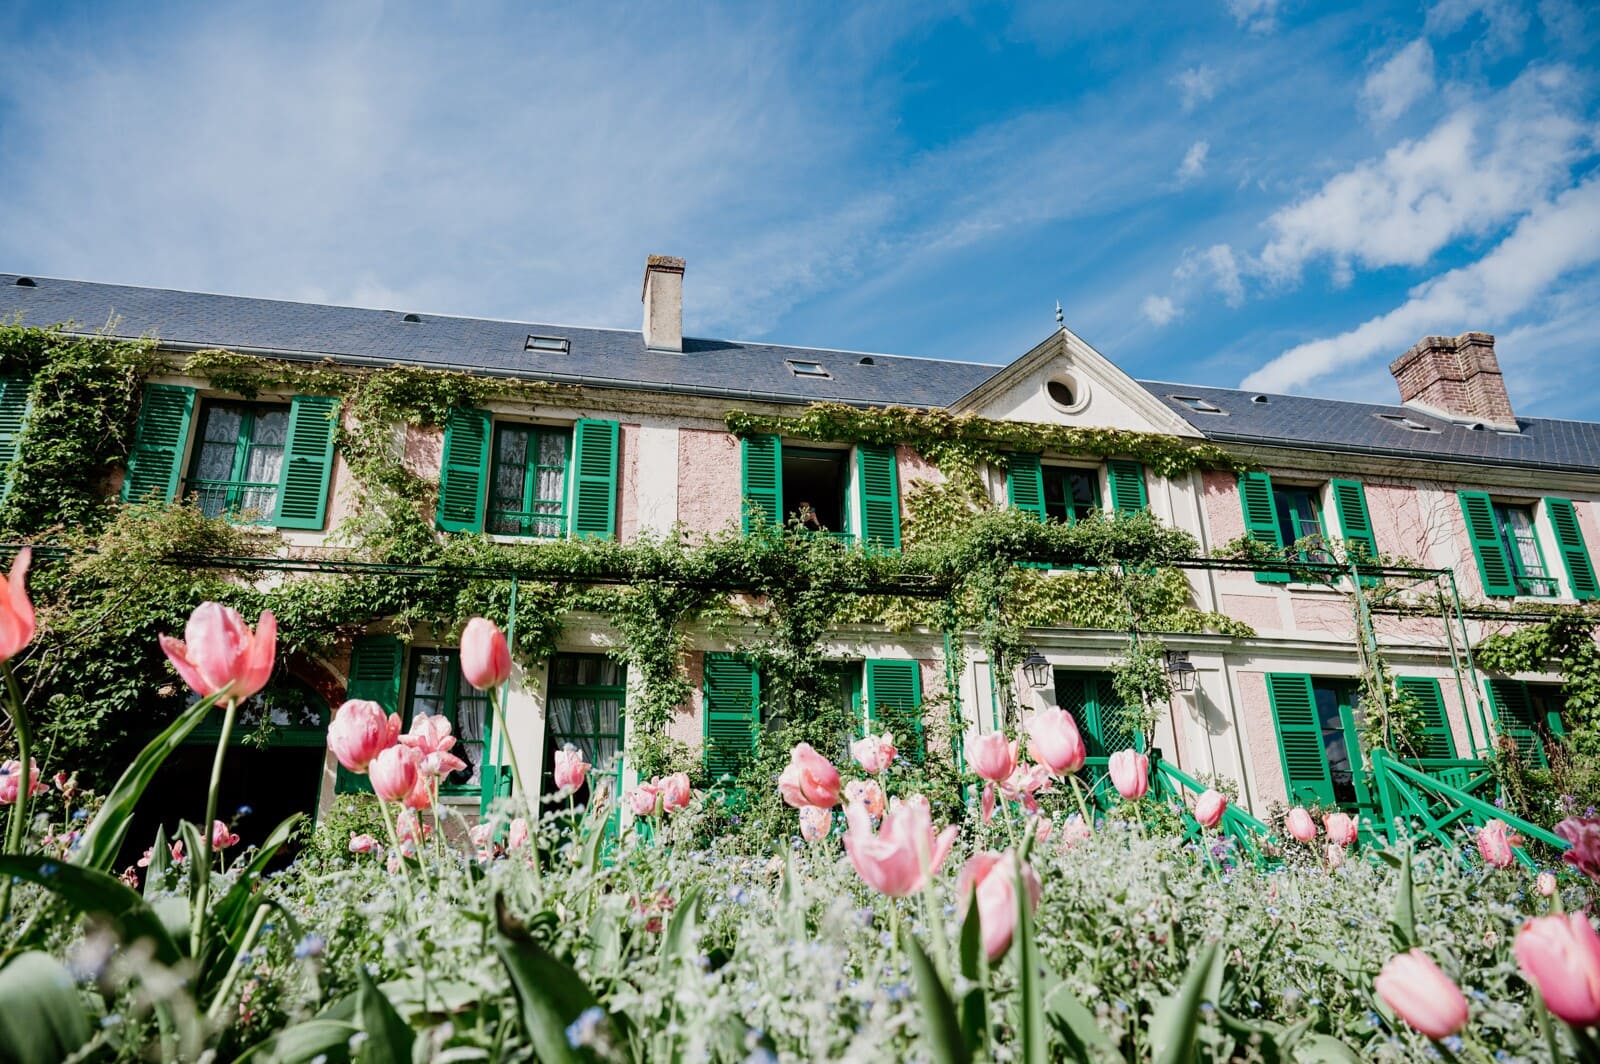 Casa de jardines de Claude Monet, Giverny 